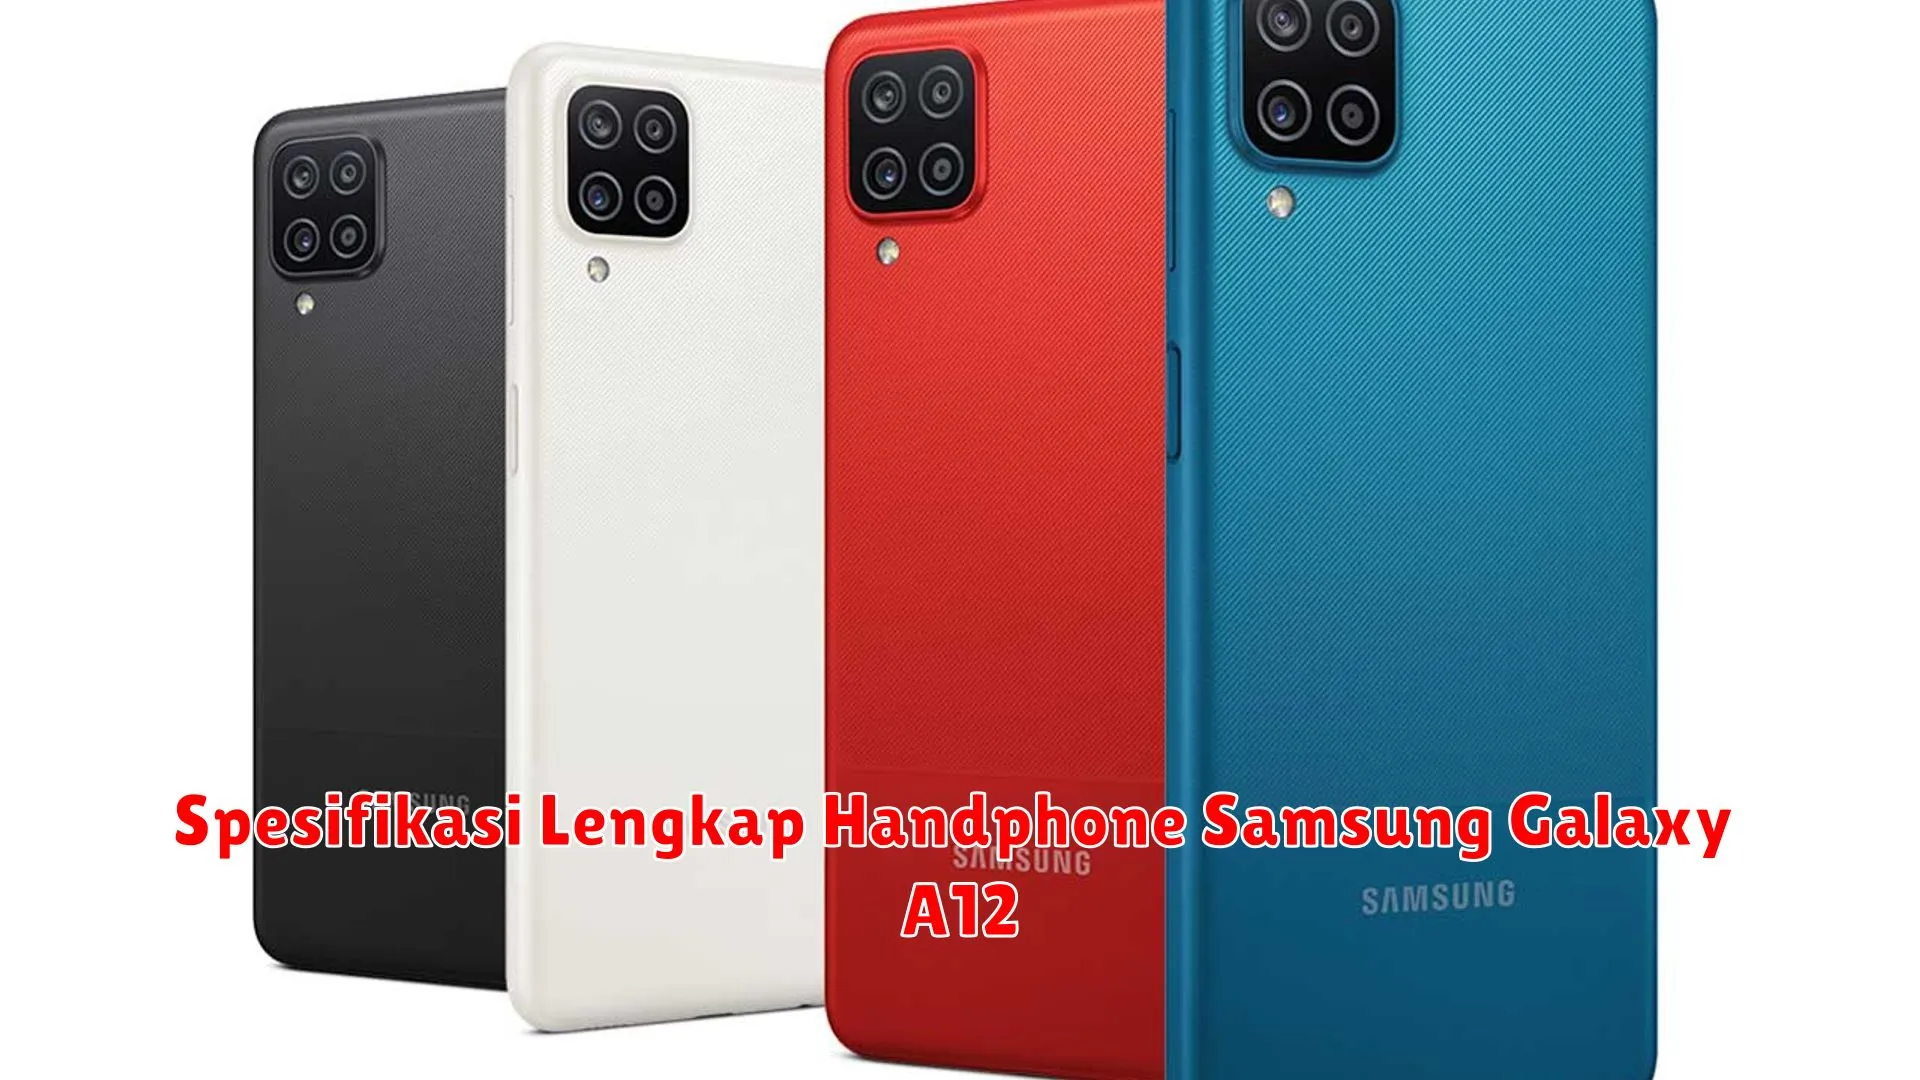 Spesifikasi Lengkap Handphone Samsung Galaxy A12